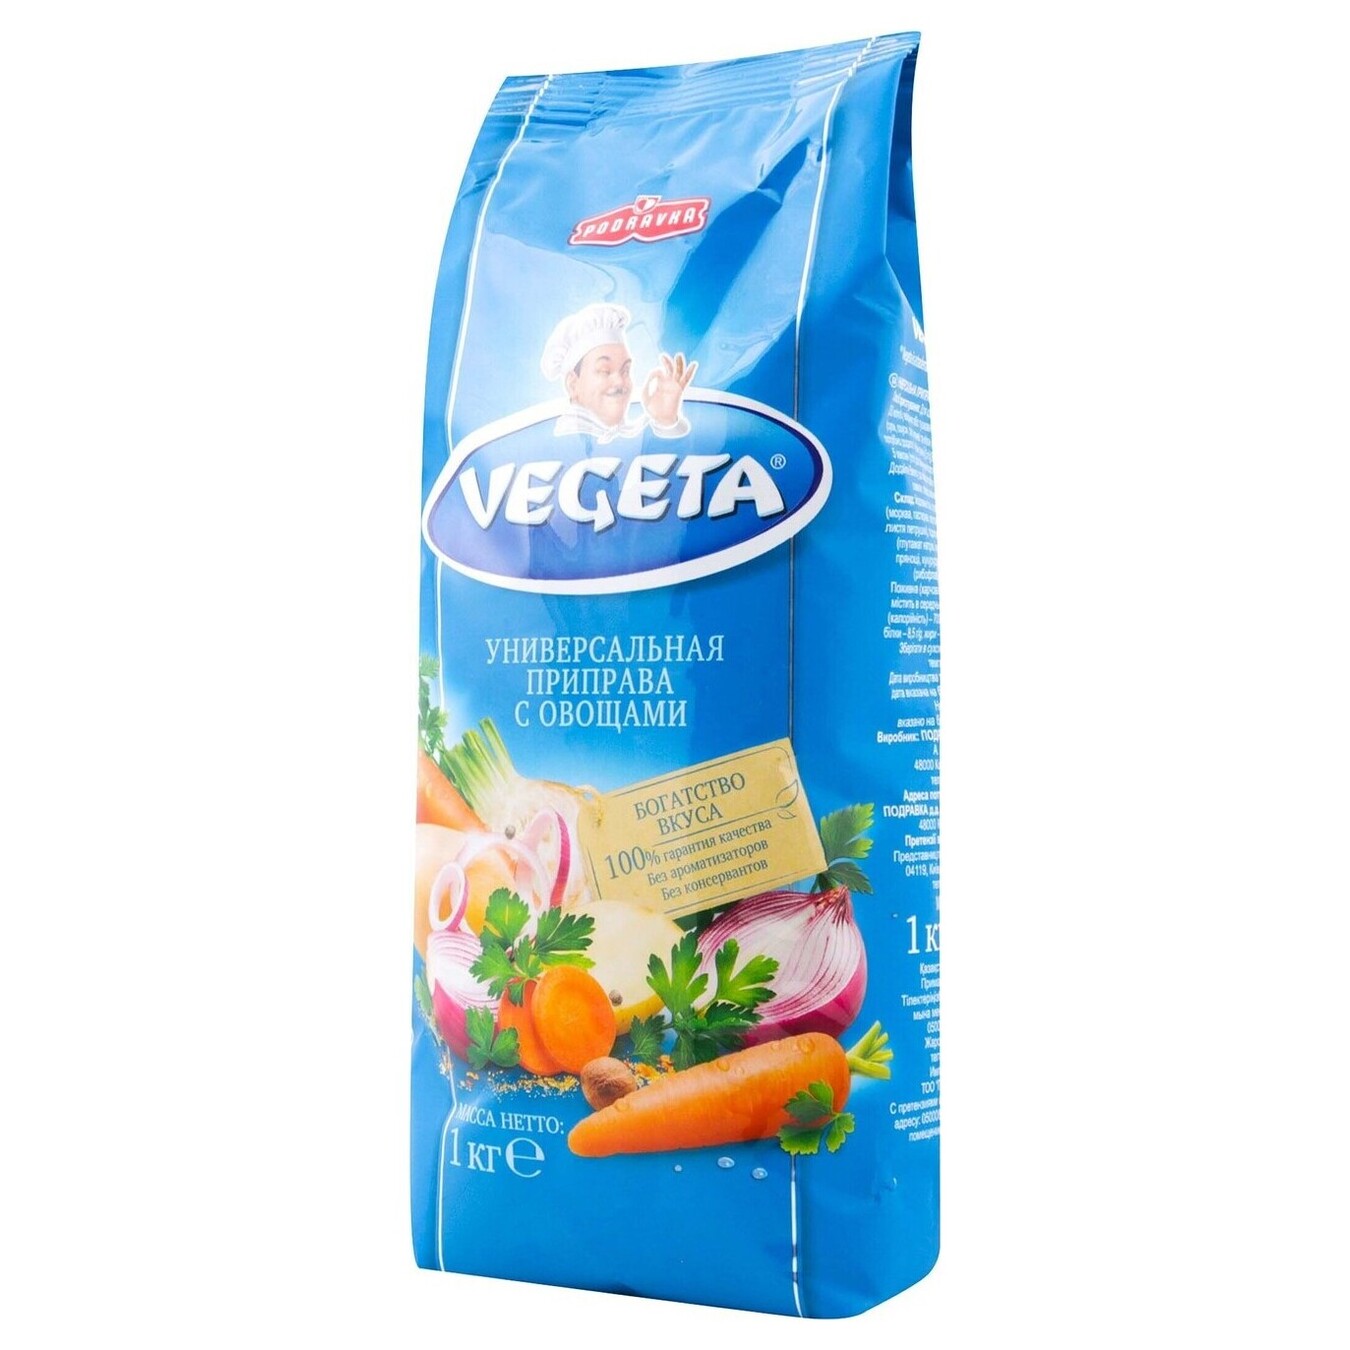 Vegeta Seasoning 1kg 2